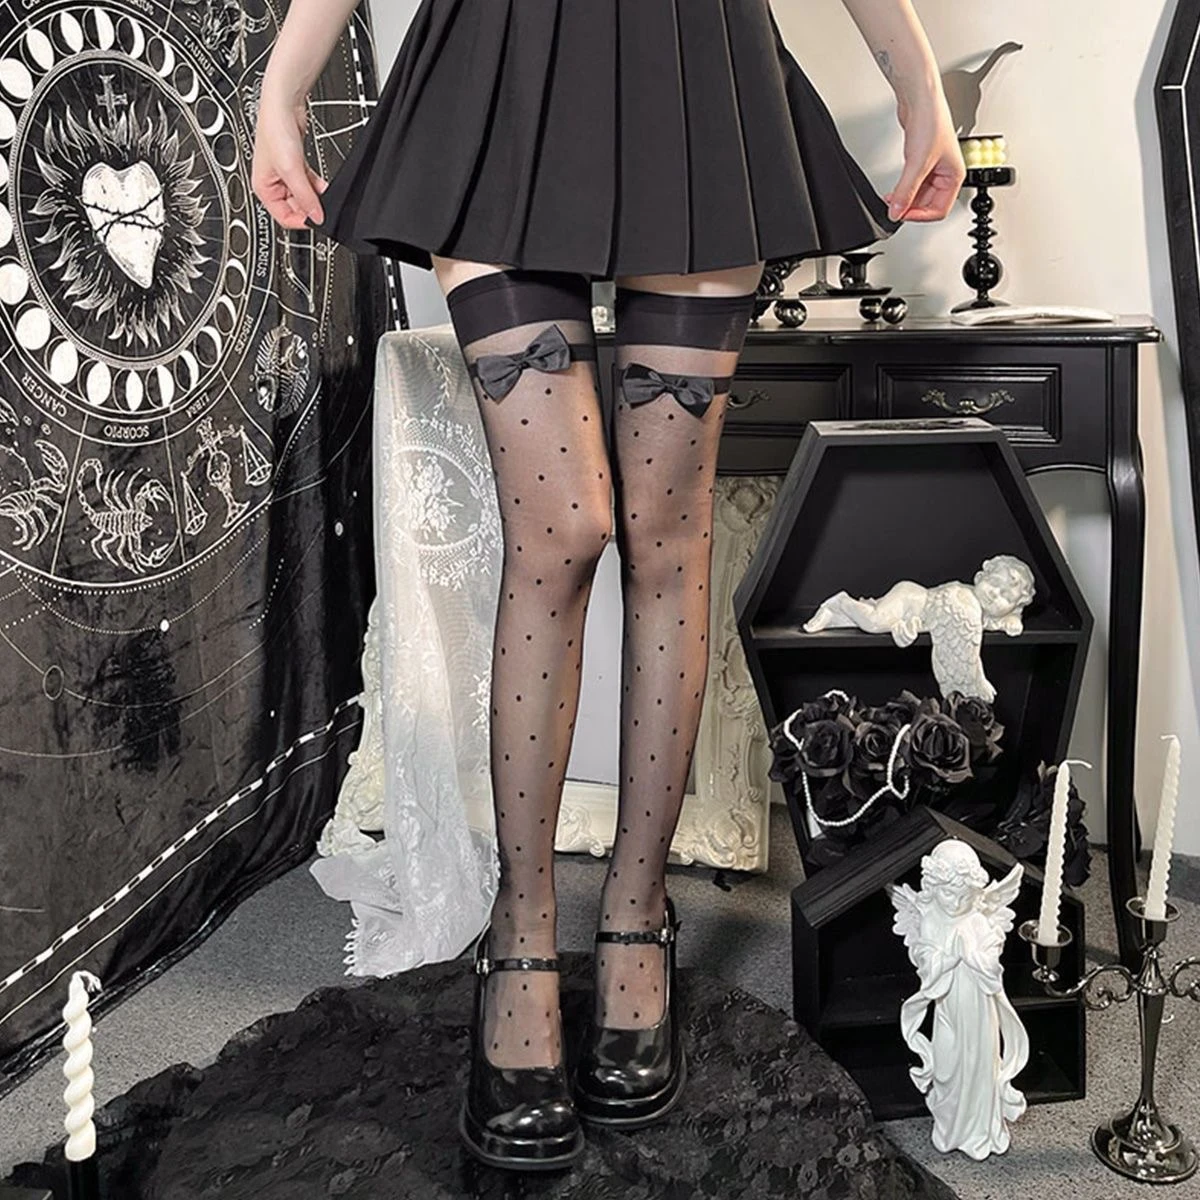 

Hot Gothic Stockings for Women Clothes Lolita JK Polka Dot Bow Black White sheer Stocking Summer Over Knee Socks Anime Hosiery